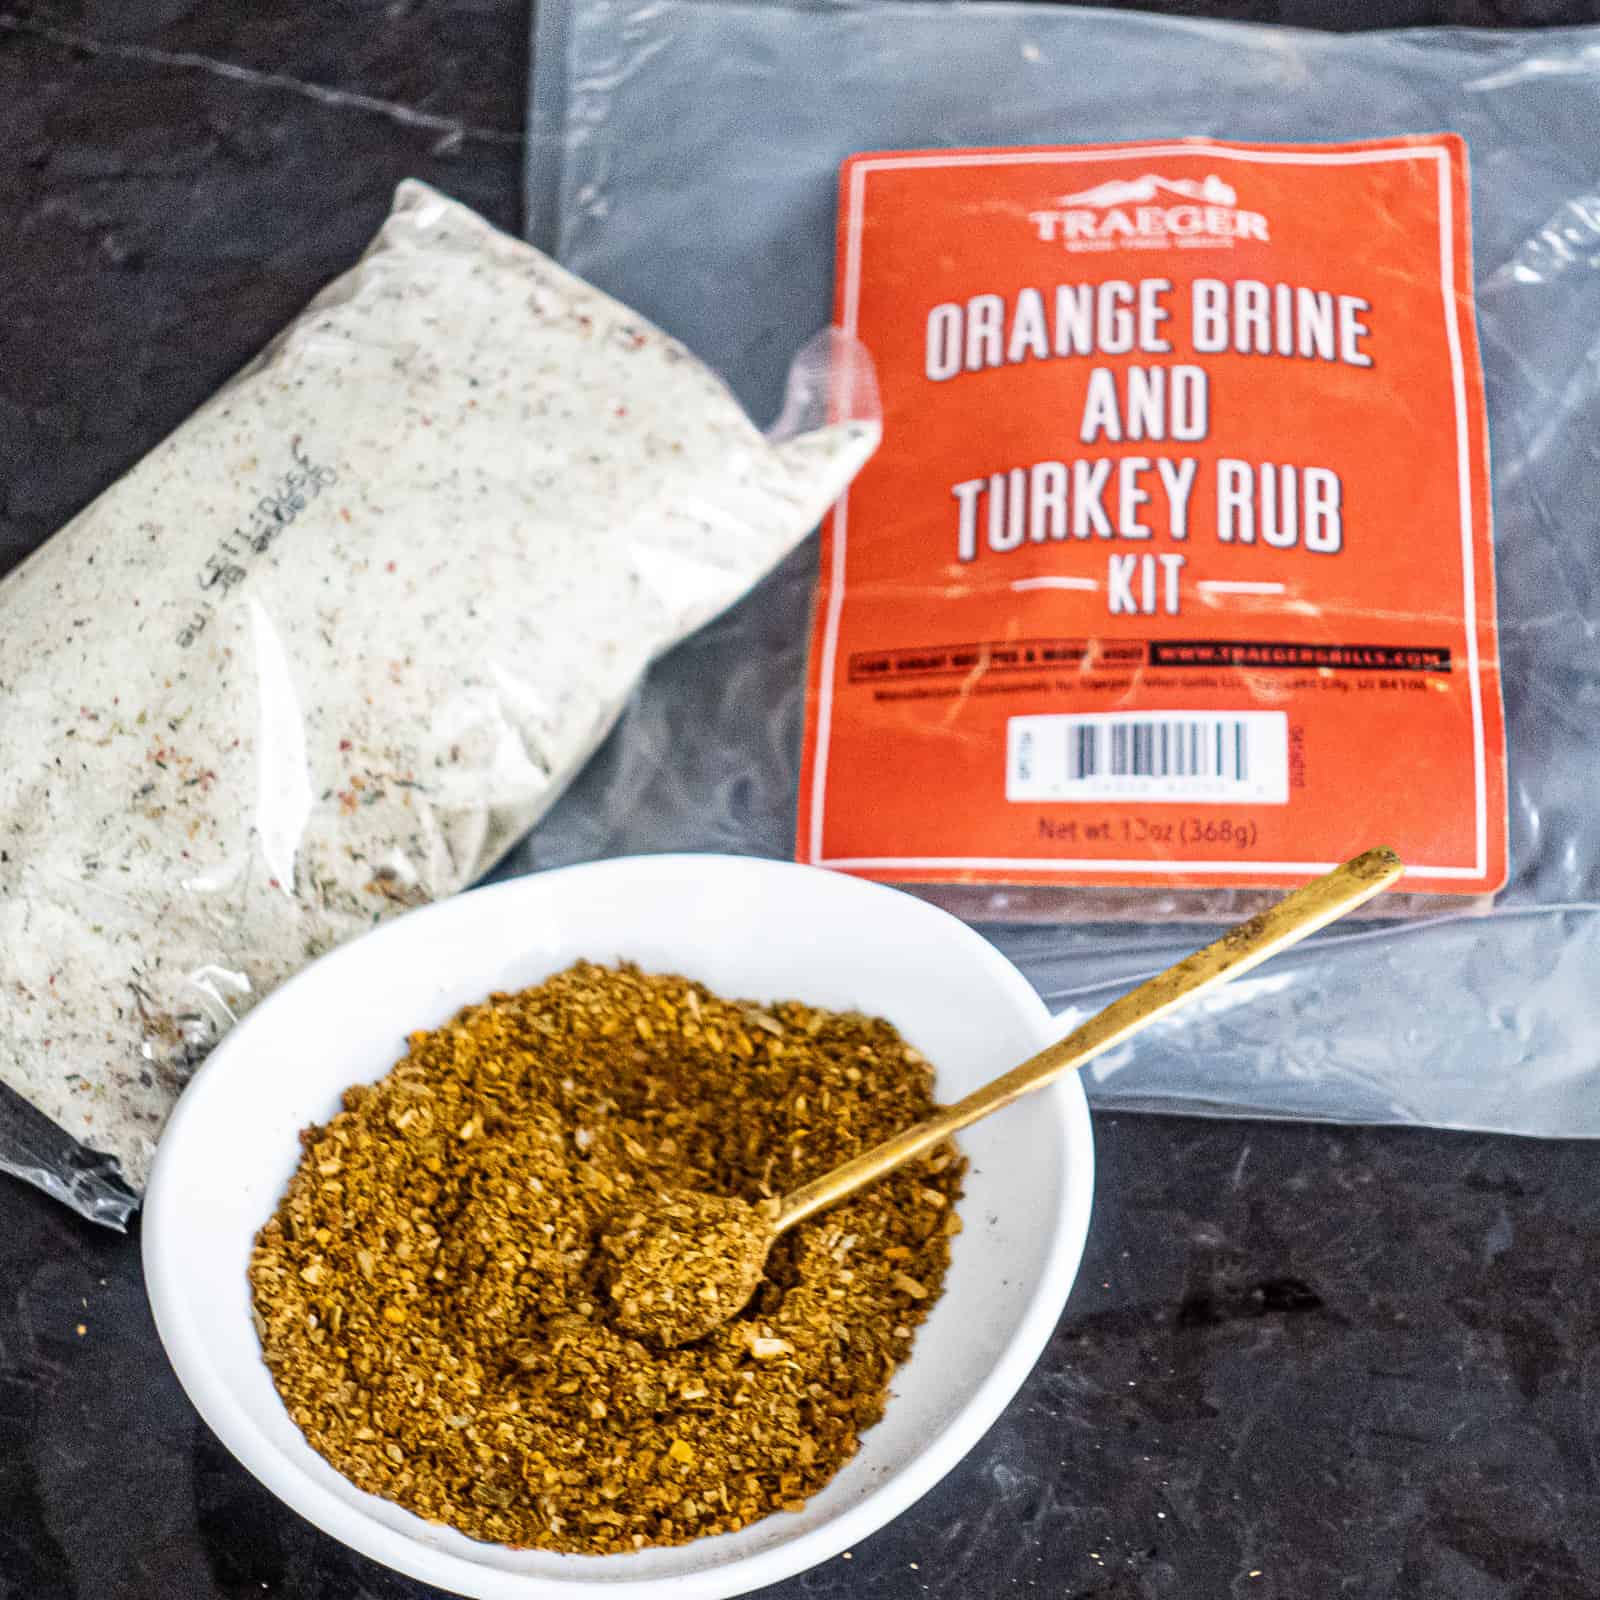 Traeger orange brine and turkey rub kit